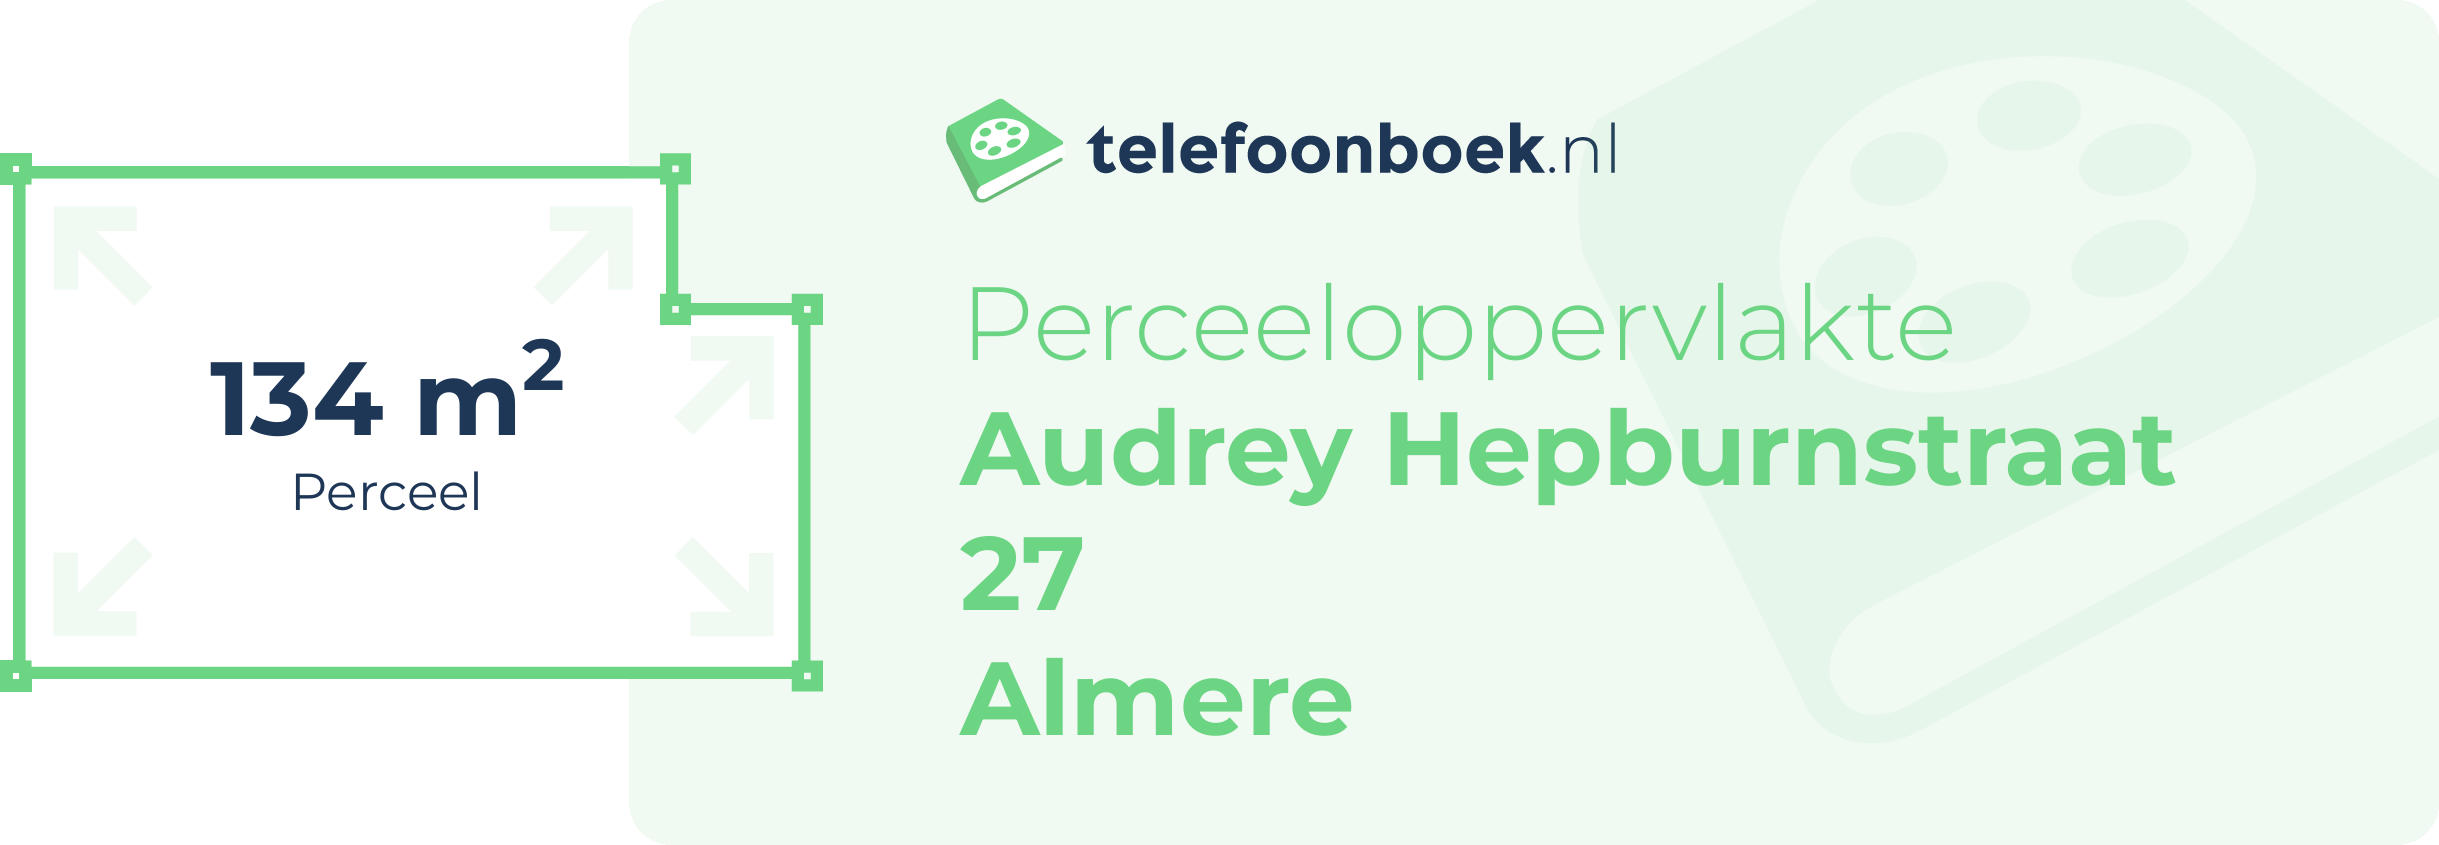 Perceeloppervlakte Audrey Hepburnstraat 27 Almere